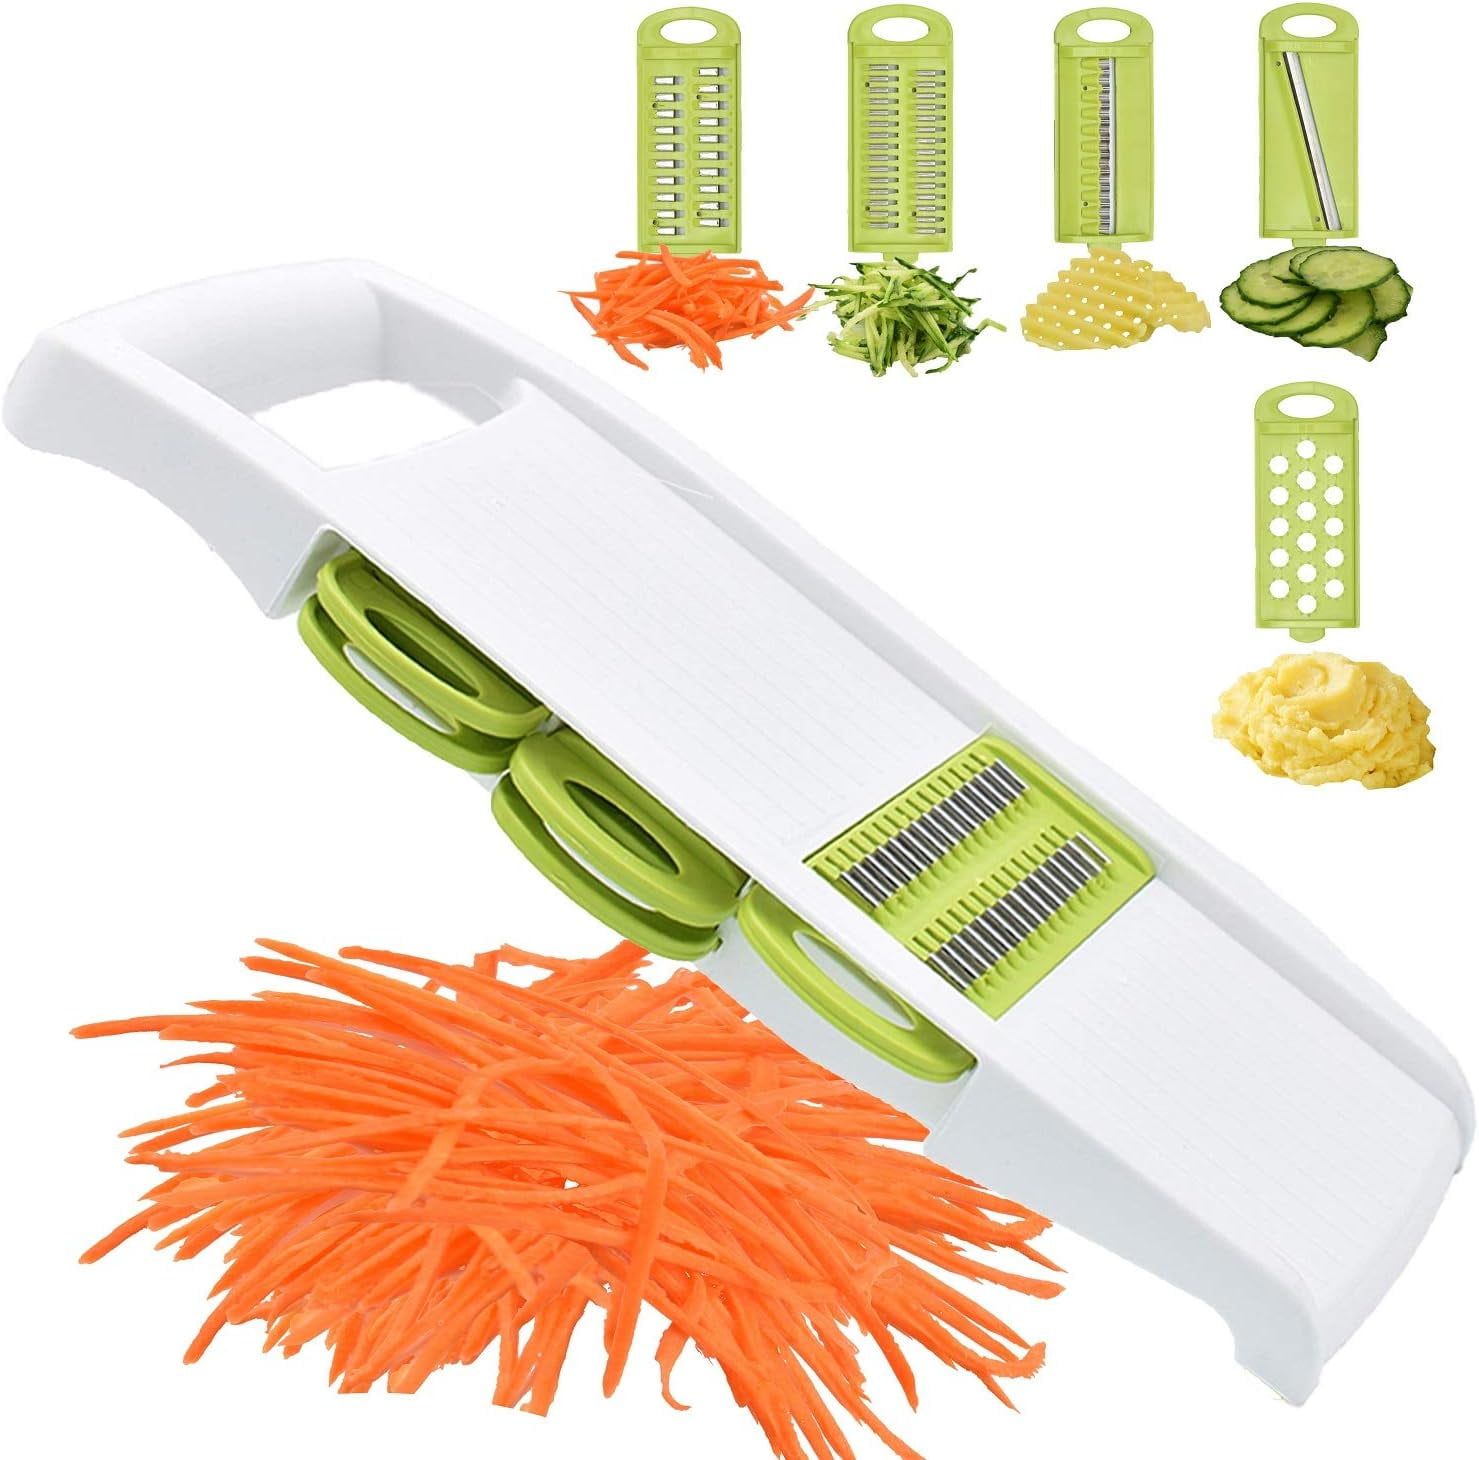 FUKTSYSM Mandolin Slicer - Newest Design Vegetable Chopper, 11 in 1 Mandoline Slicer Adjustable Vegetable Cutter, Vegetable Cutter with Julienne